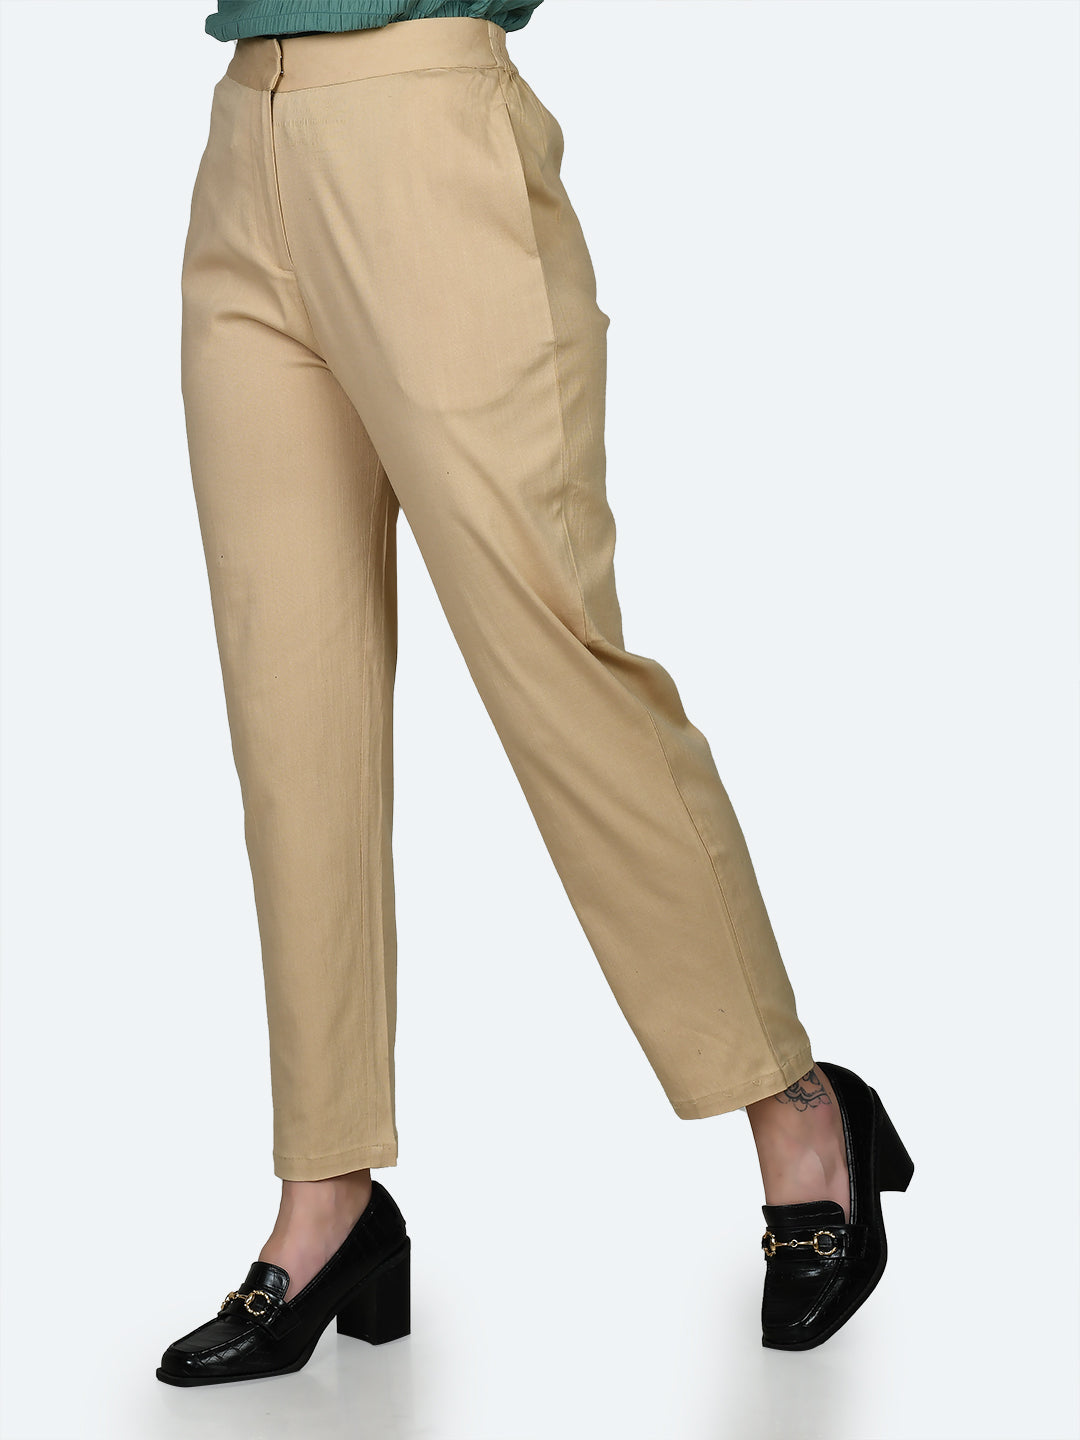 Kyla Beige Wide leg Trousers & womens beige black stripe trousers |  Wearitboutique